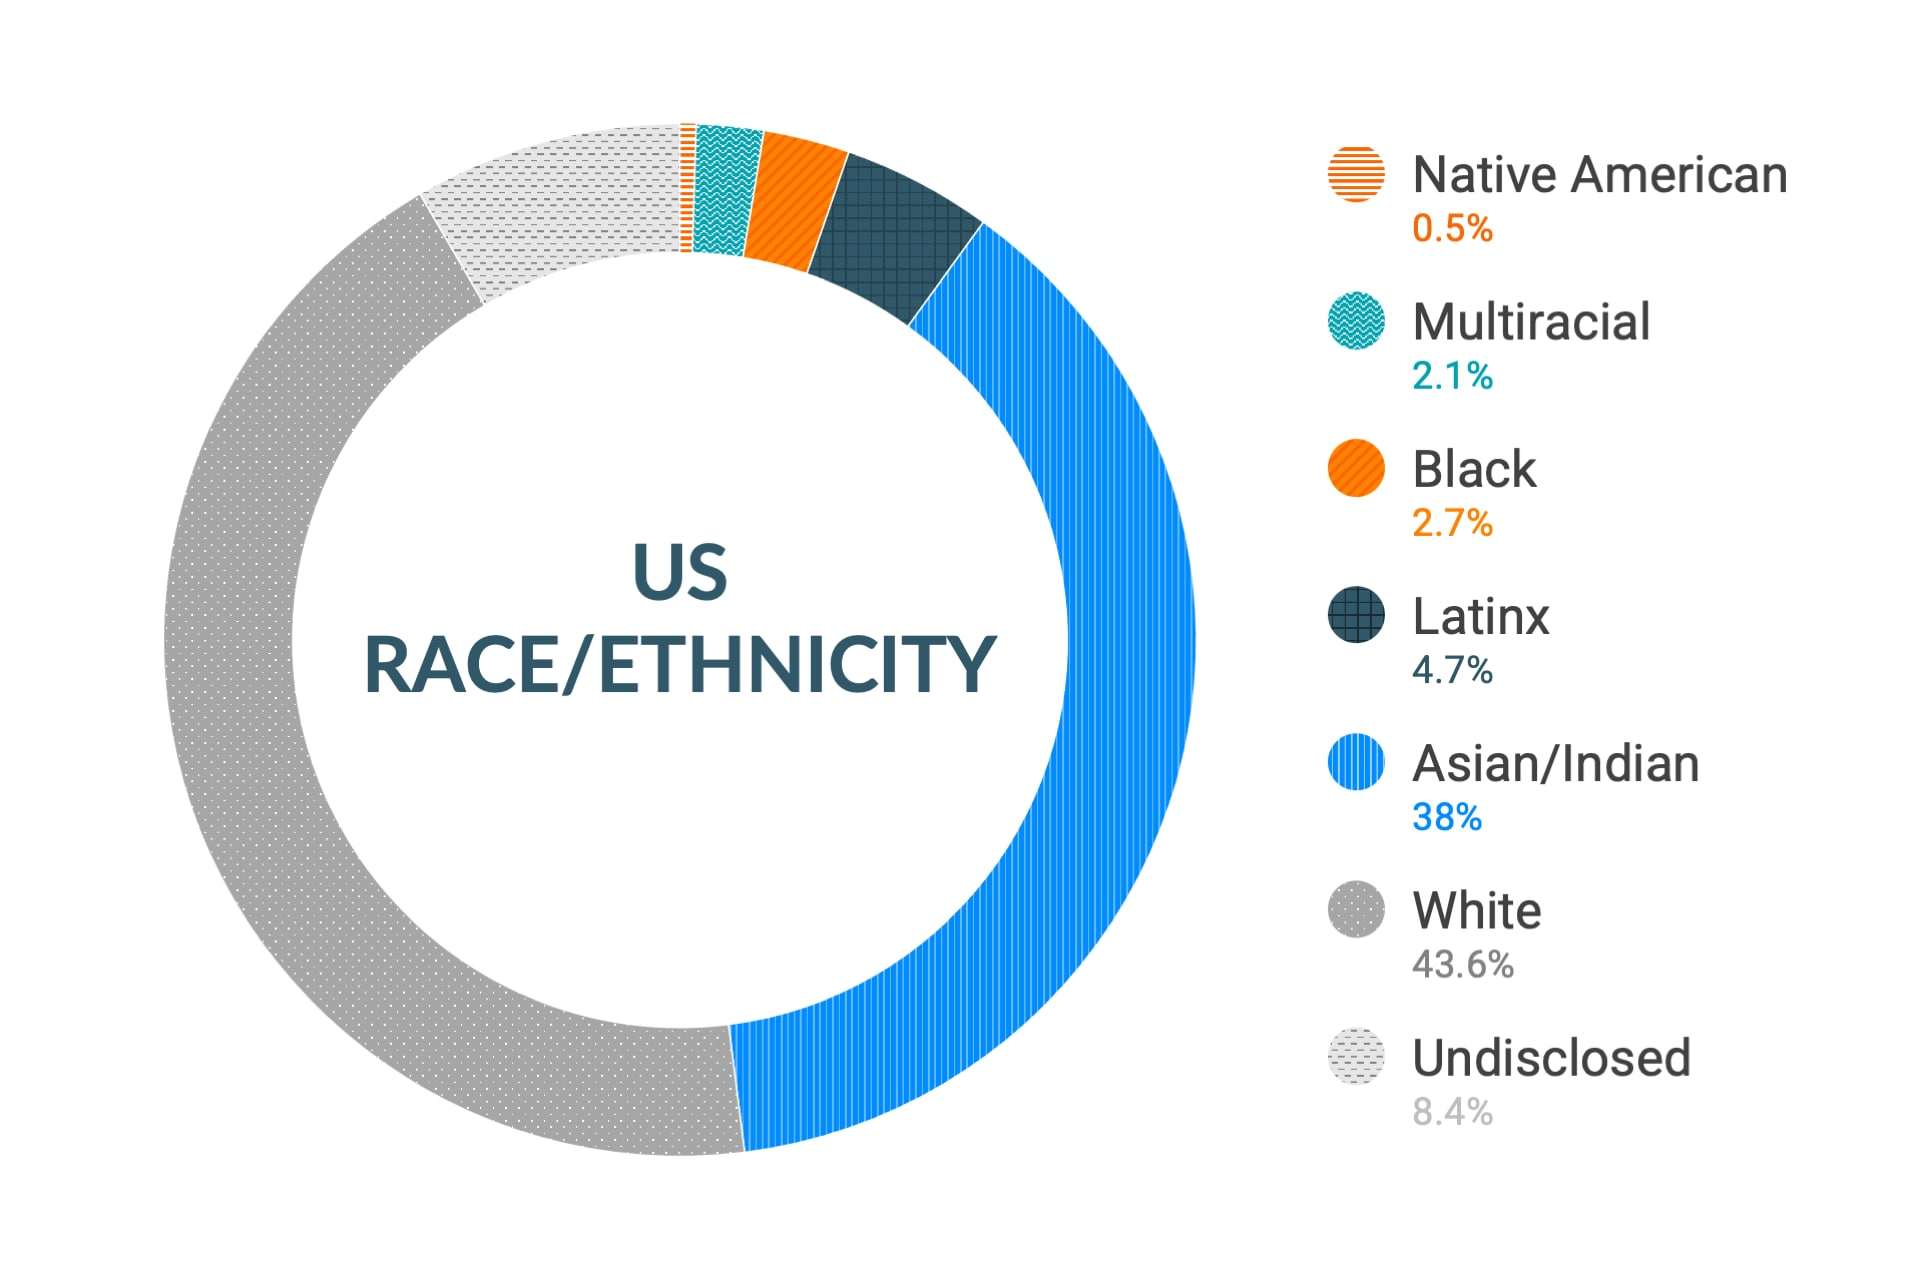 Dati Cloudera su diversità e inclusione etnica negli Stati Uniti: nativi americani 0,5%, multietnici 2,1%, afroamericani 2,7%, latinoamericani 4,7%, asiatici e indiani 38%, caucasici 43,6%, non dichiarato 8,4%.